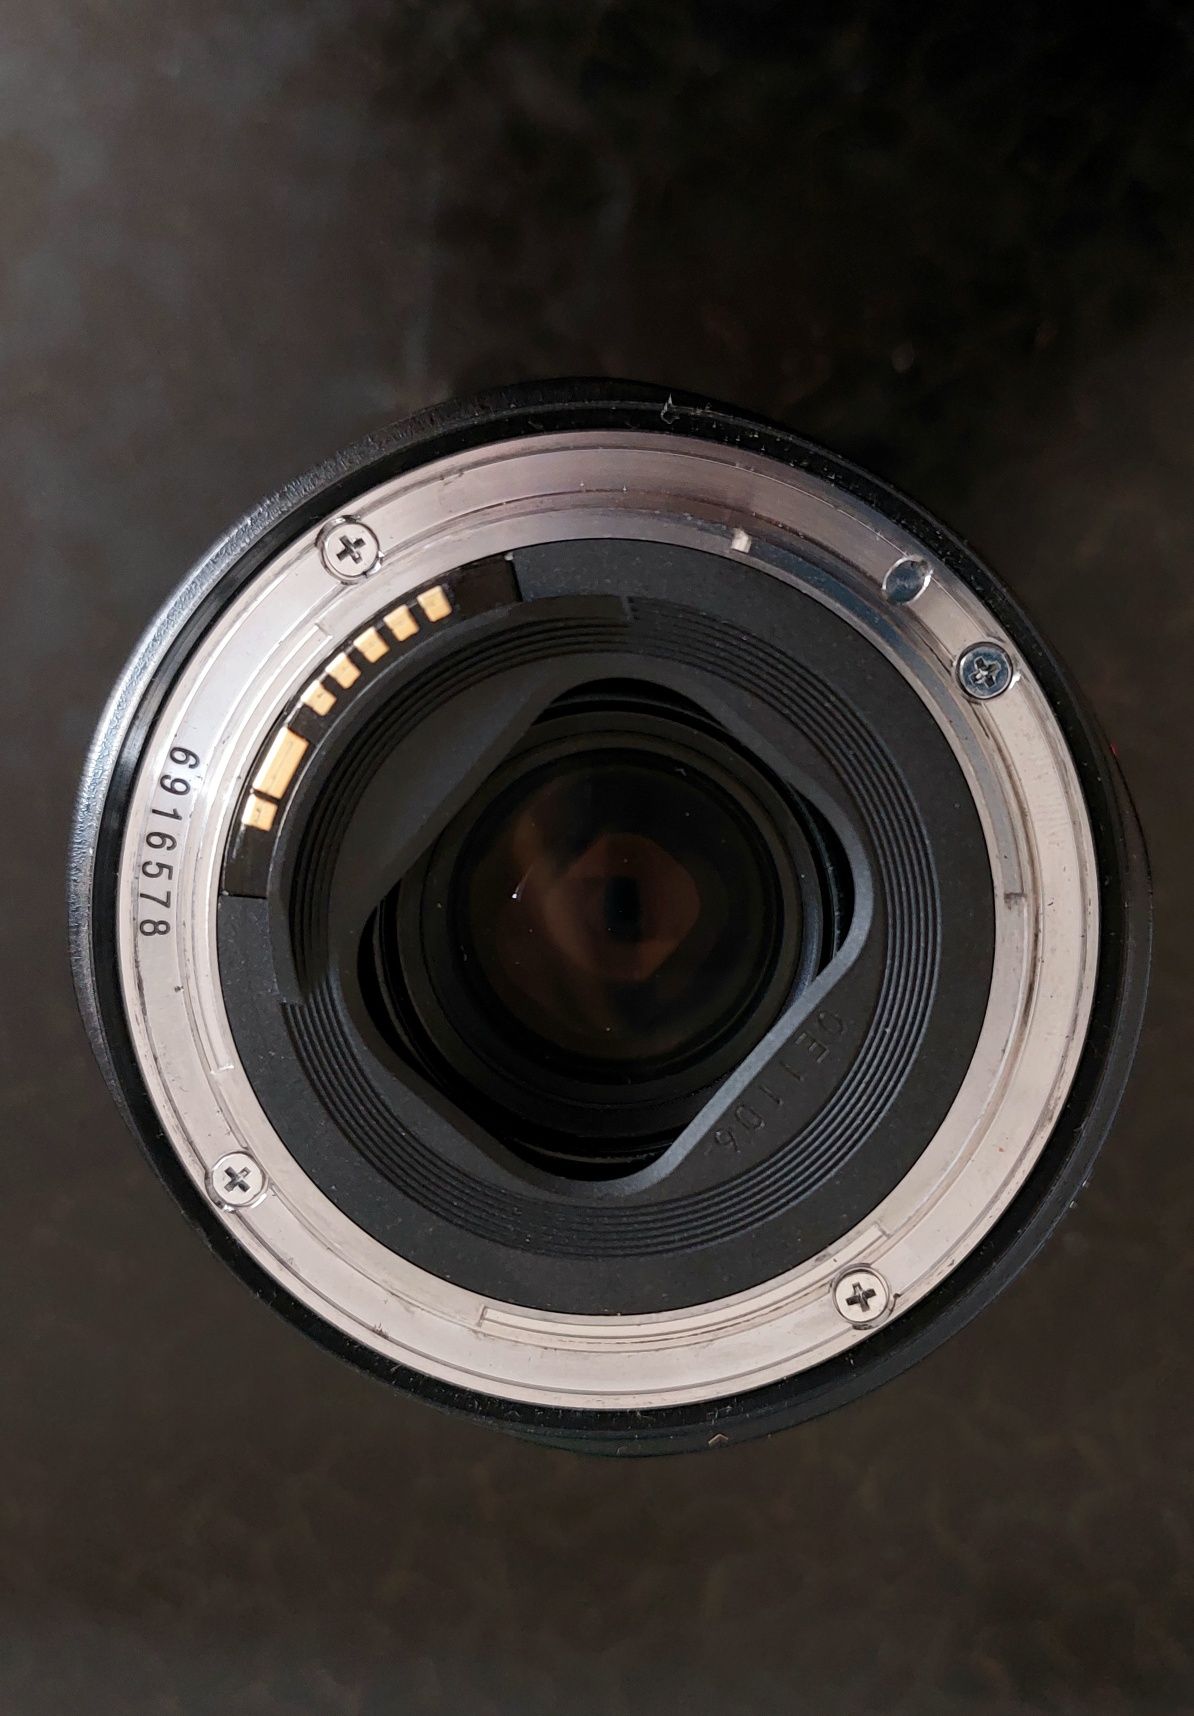 Canon eos 6D fotoparat